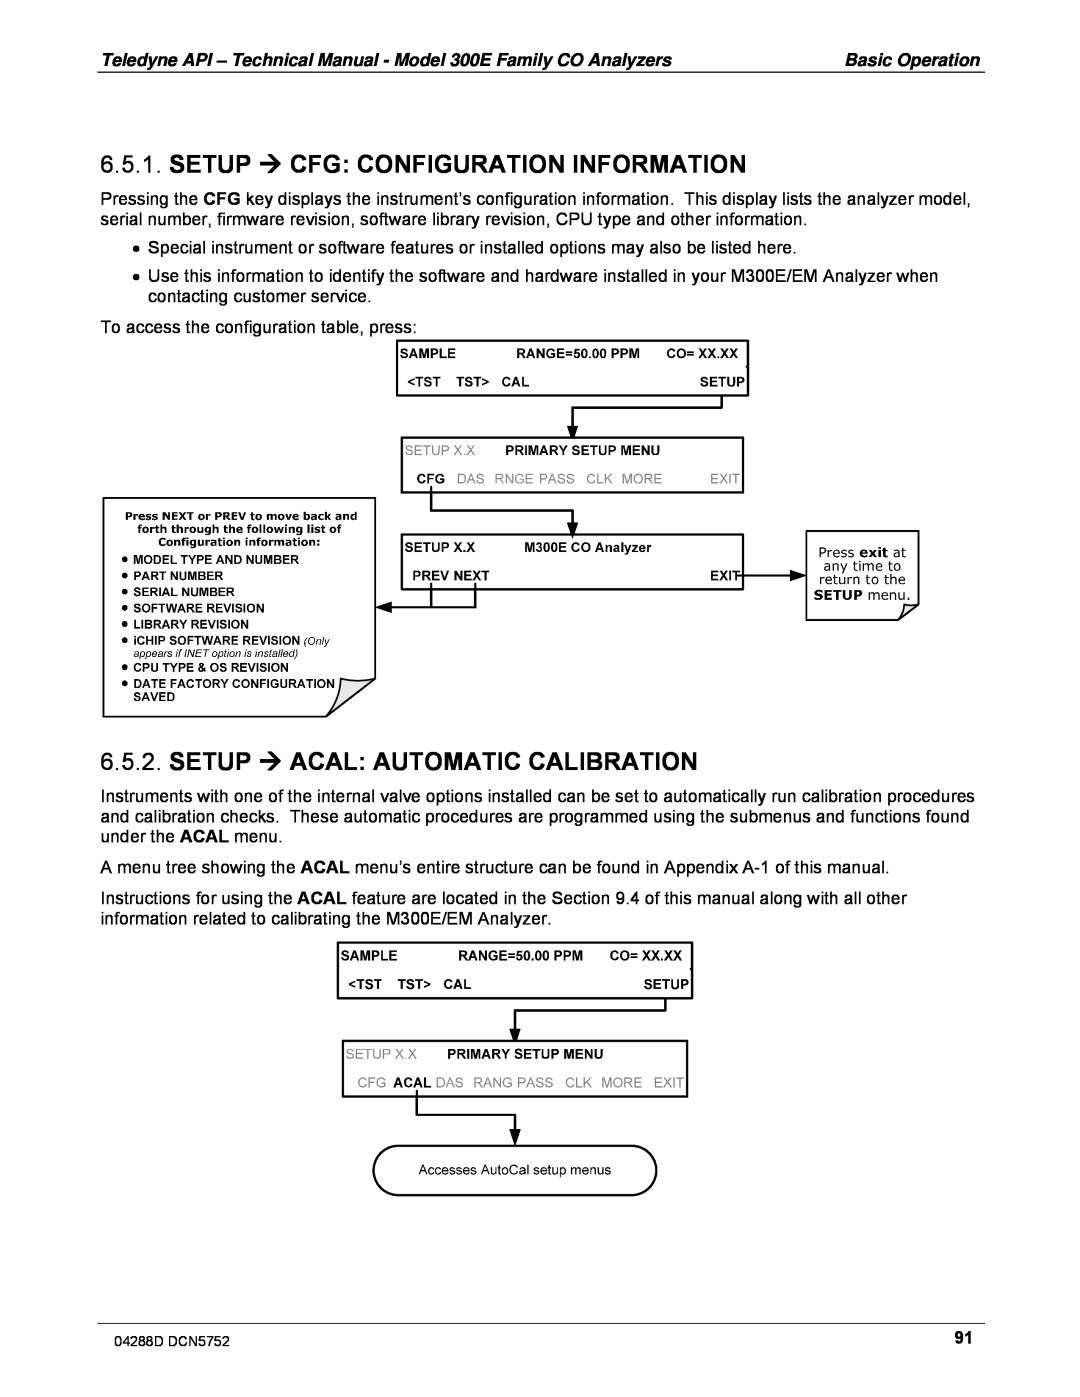 Teledyne M300EM operation manual Setup  Cfg: Configuration Information, Setup  Acal: Automatic Calibration 